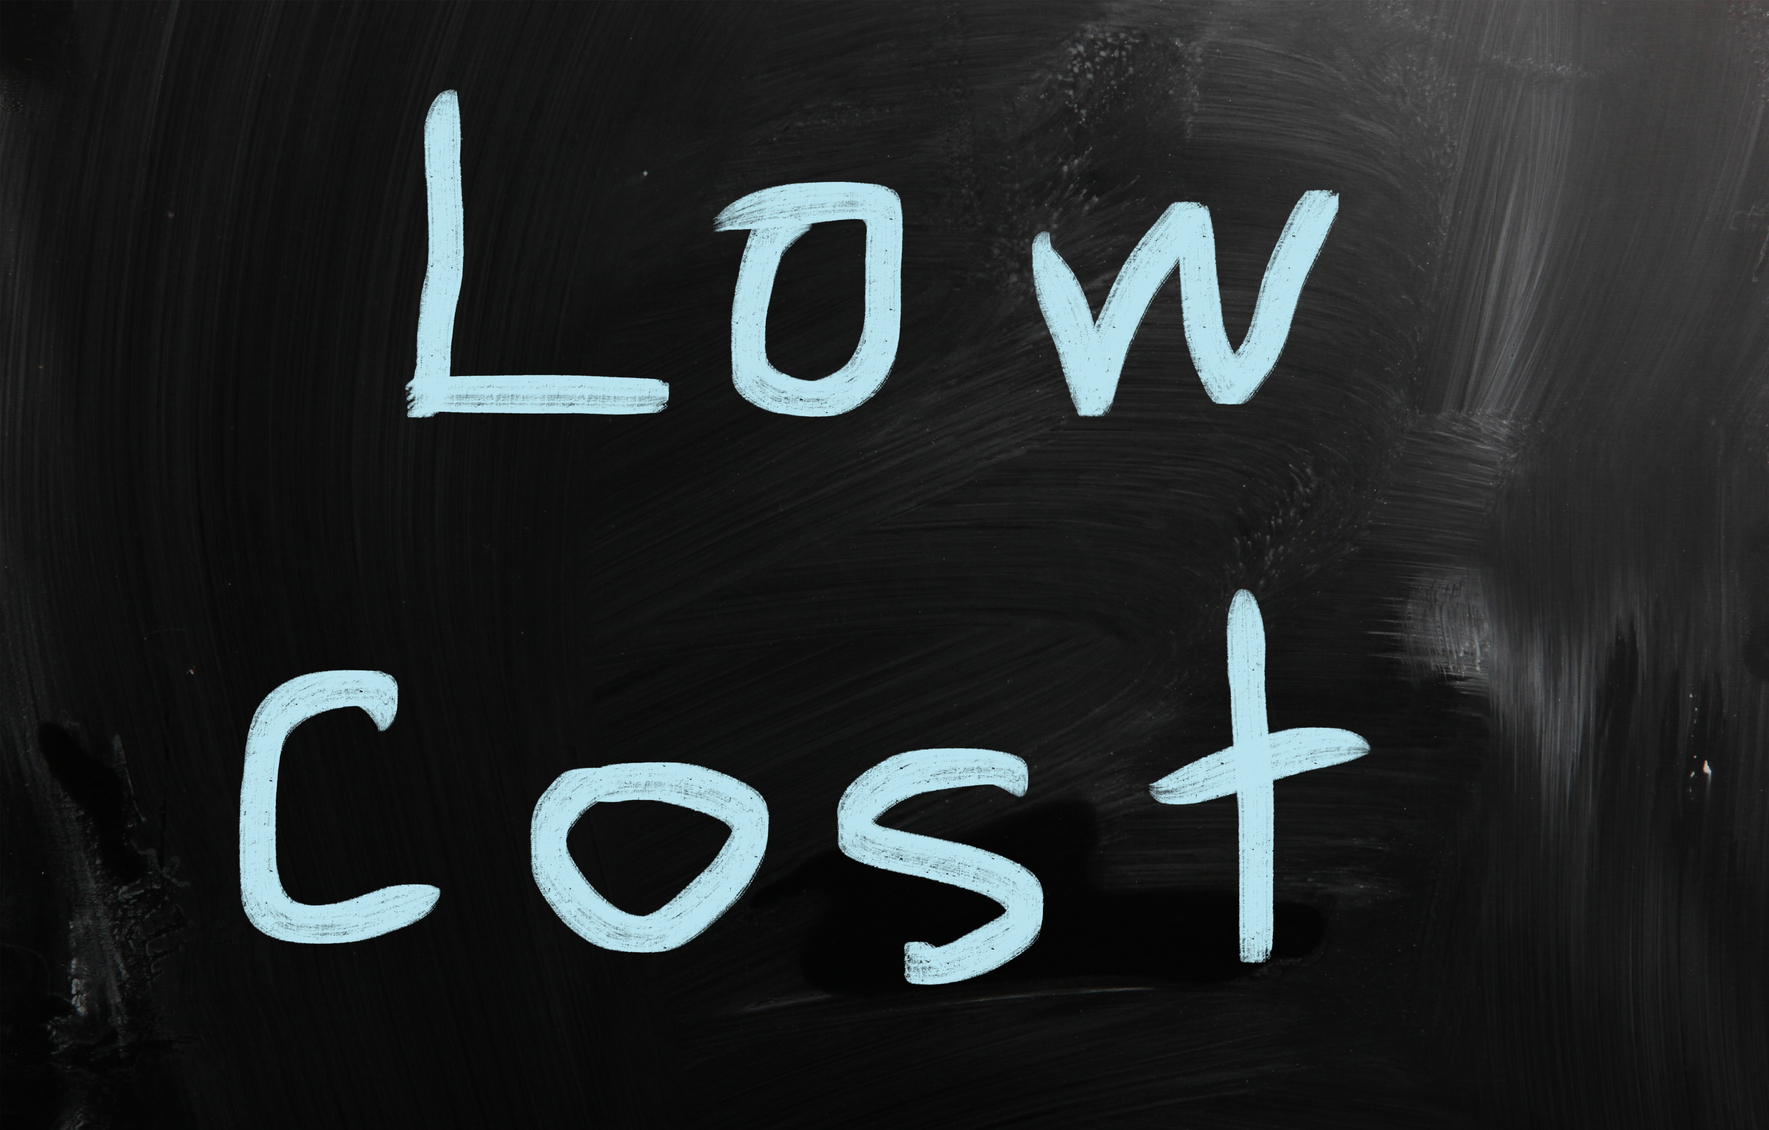 "Low cost" handwritten with white chalk on a blackboard